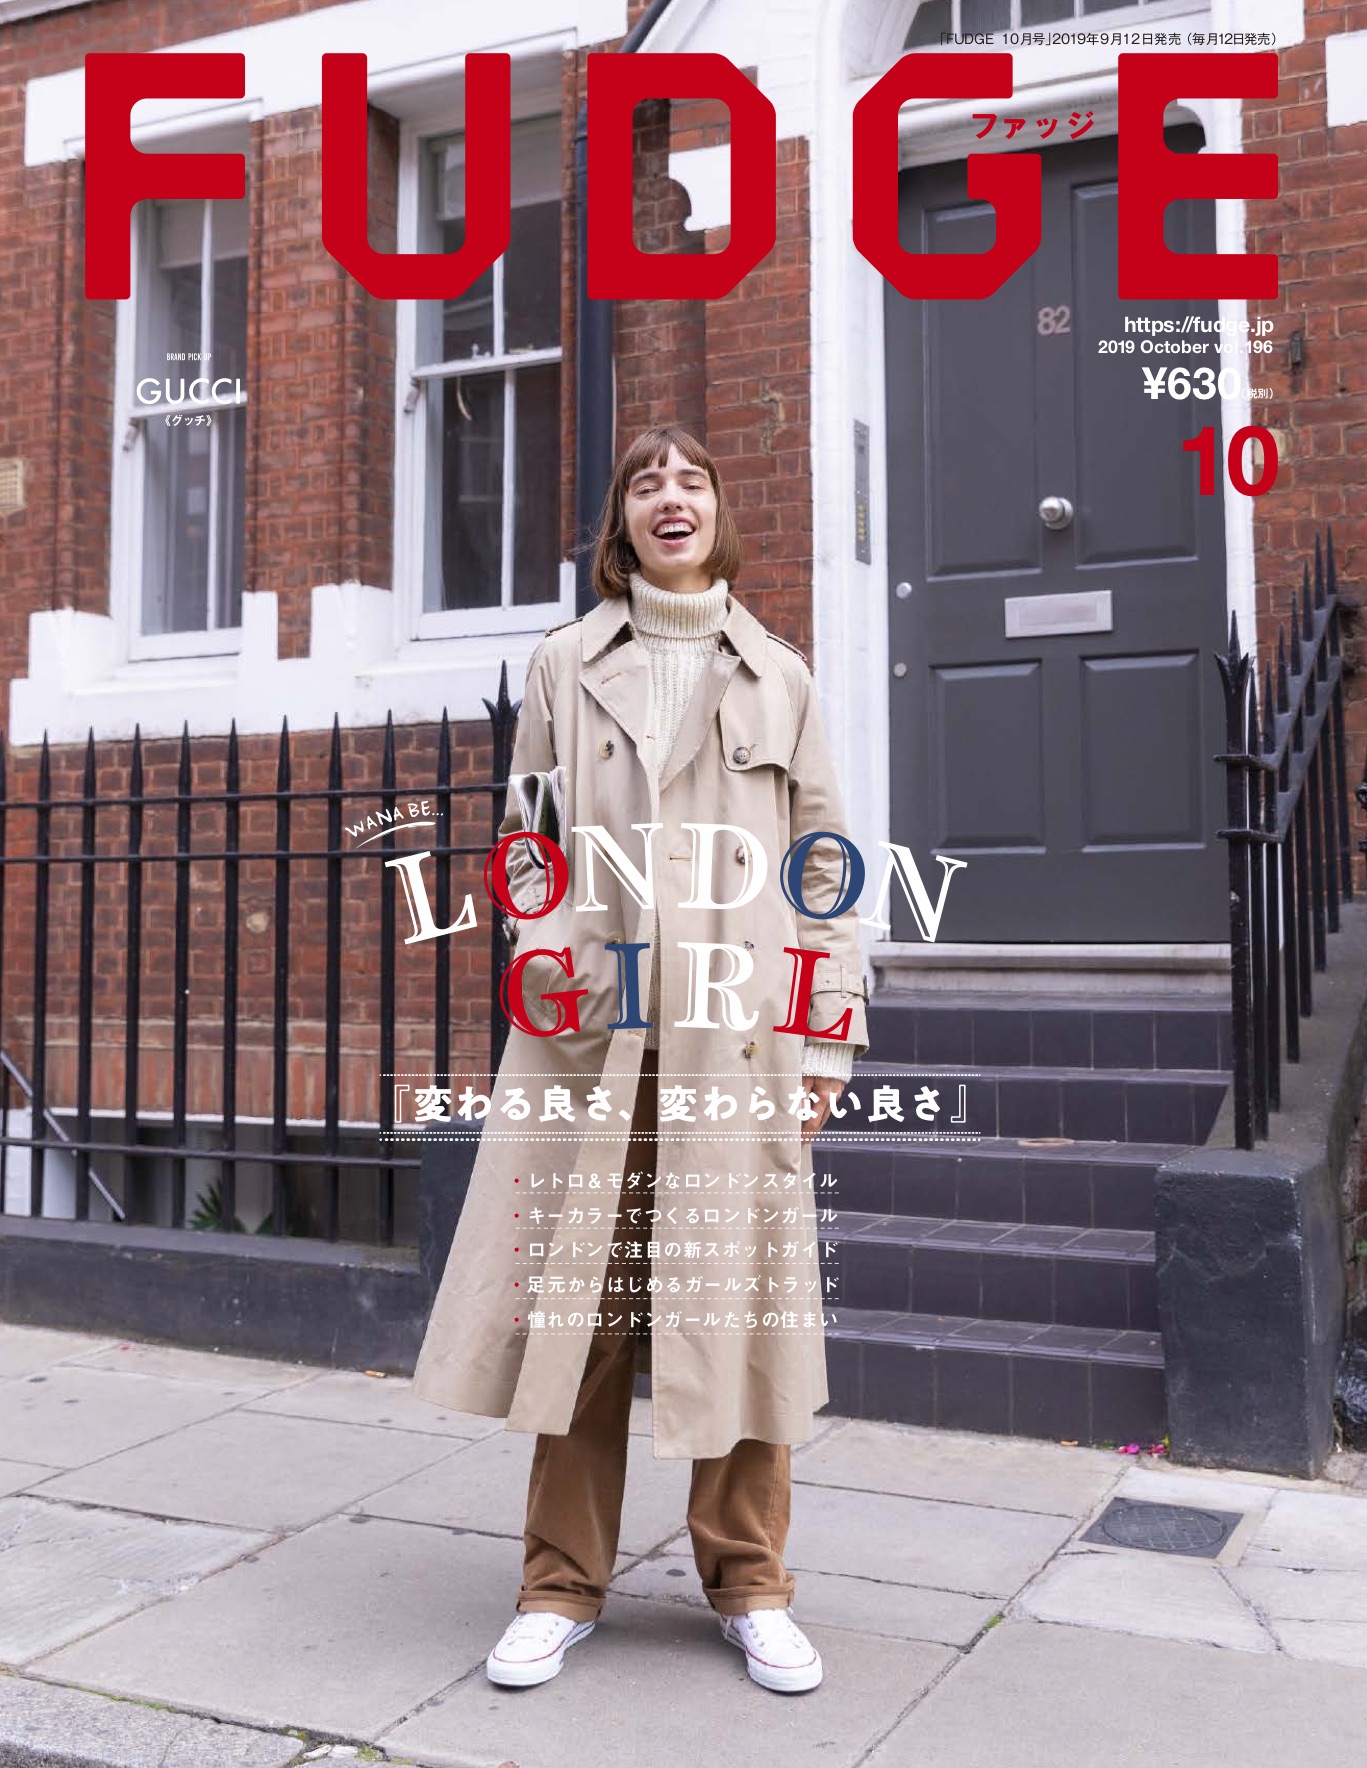 本日発売 Fudge 19年10月号は Wanna Be London Girl 変わる良さ 変わらない良さ 特集 ファッション Fudge Jp